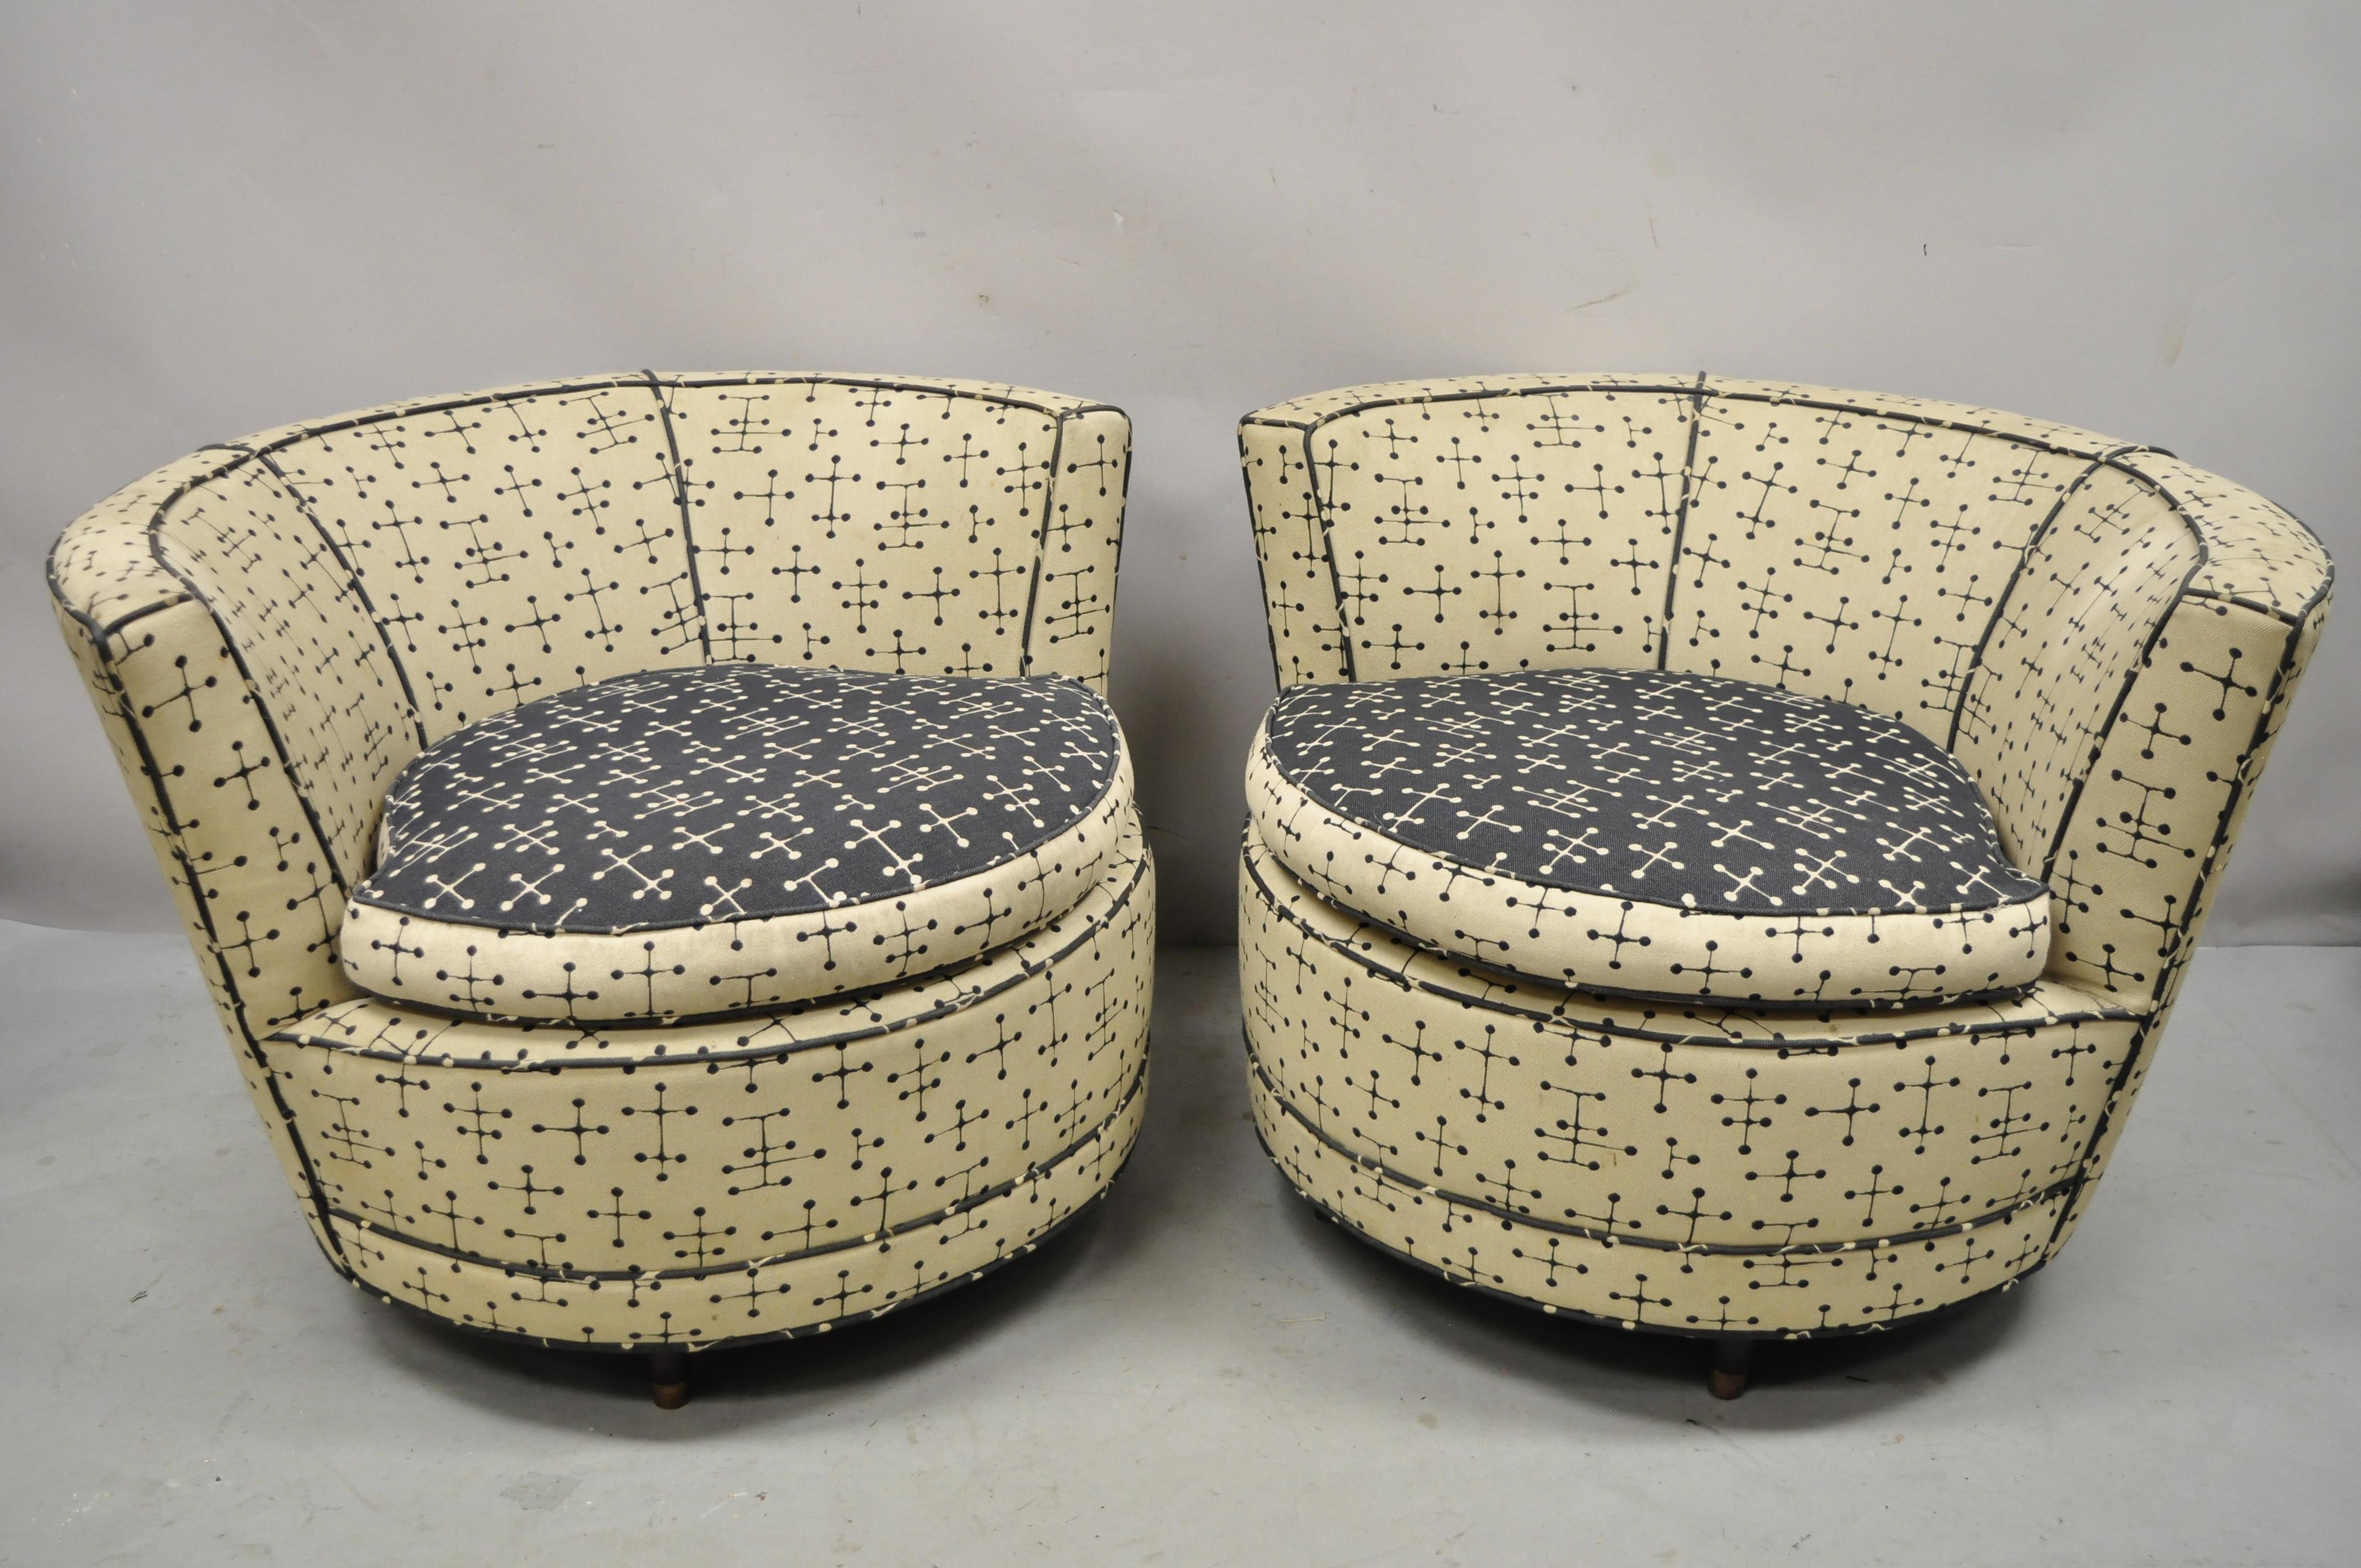 Paire de grandes chaises longues rondes vintage de style Pearsall rembourrées, de style moderne du milieu du siècle dernier. L'article présente de grands cadres ronds, des pieds fuselés courts, des cadres rembourrés, une très belle paire vintage,